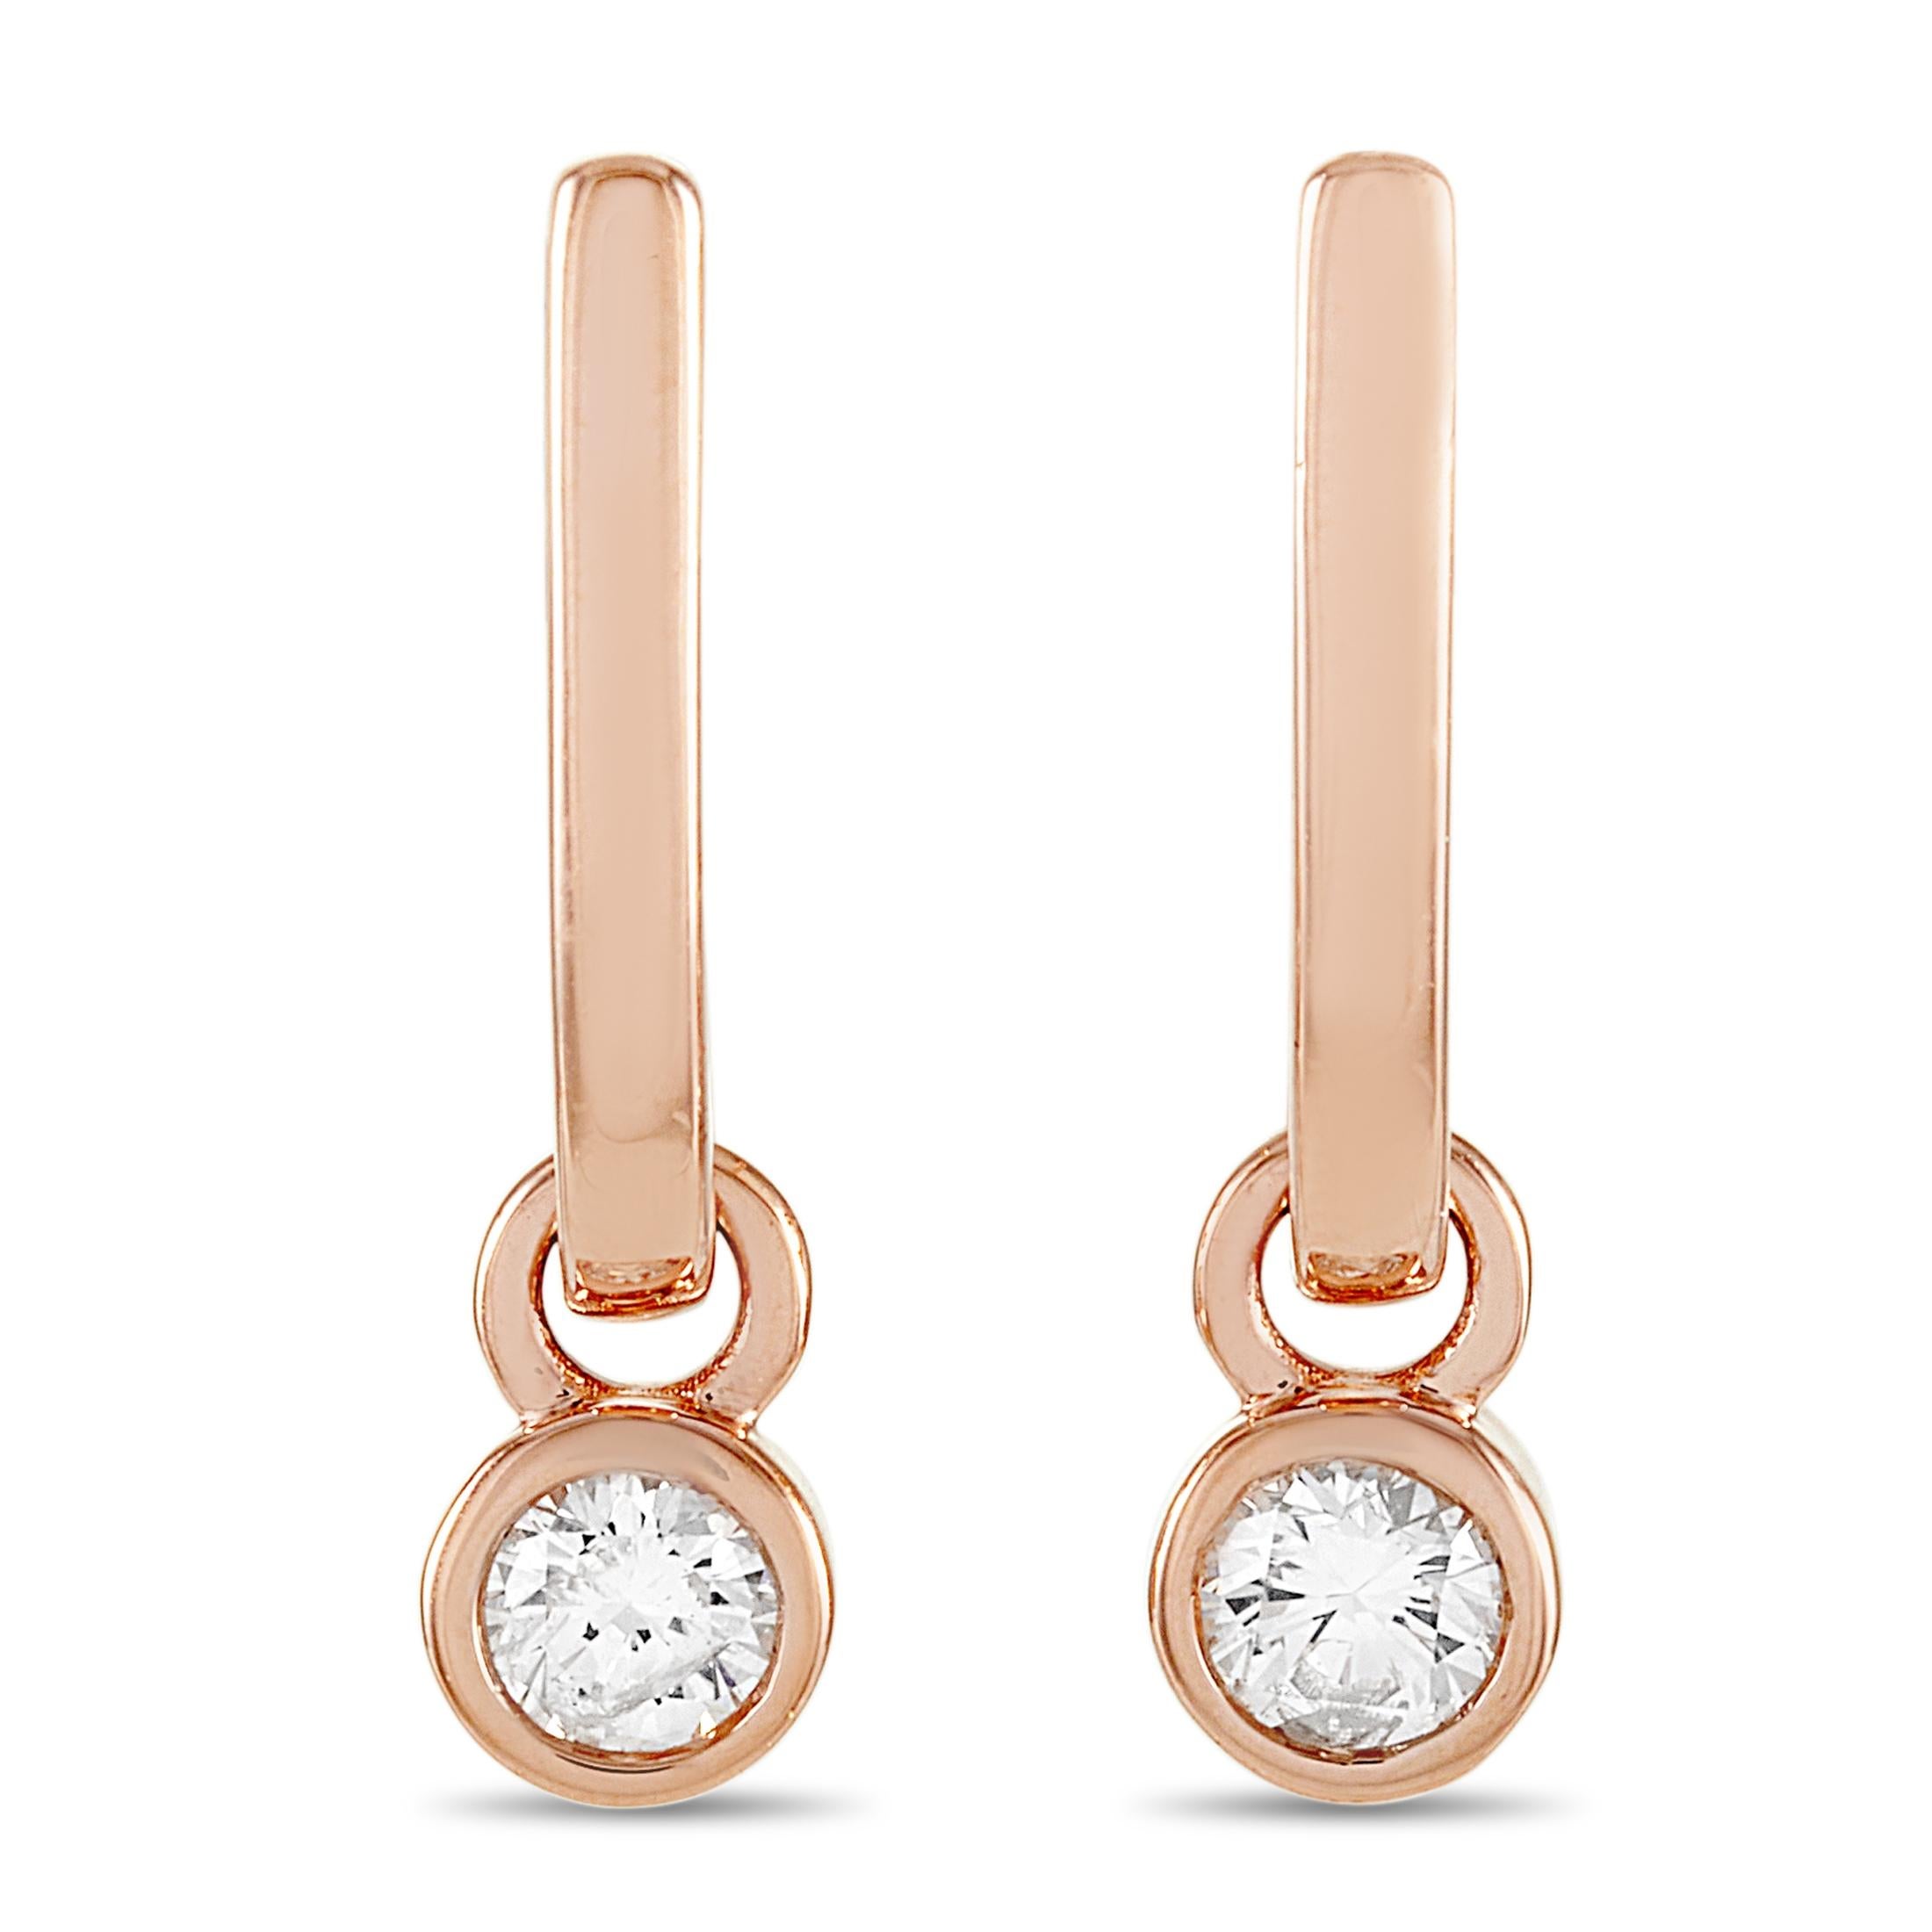 Diese LB Exclusive-Ohrringe sind aus 14 Karat Roségold gefertigt und mit Diamanten von insgesamt 0,40 Karat besetzt. Die Ohrringe messen 0,75